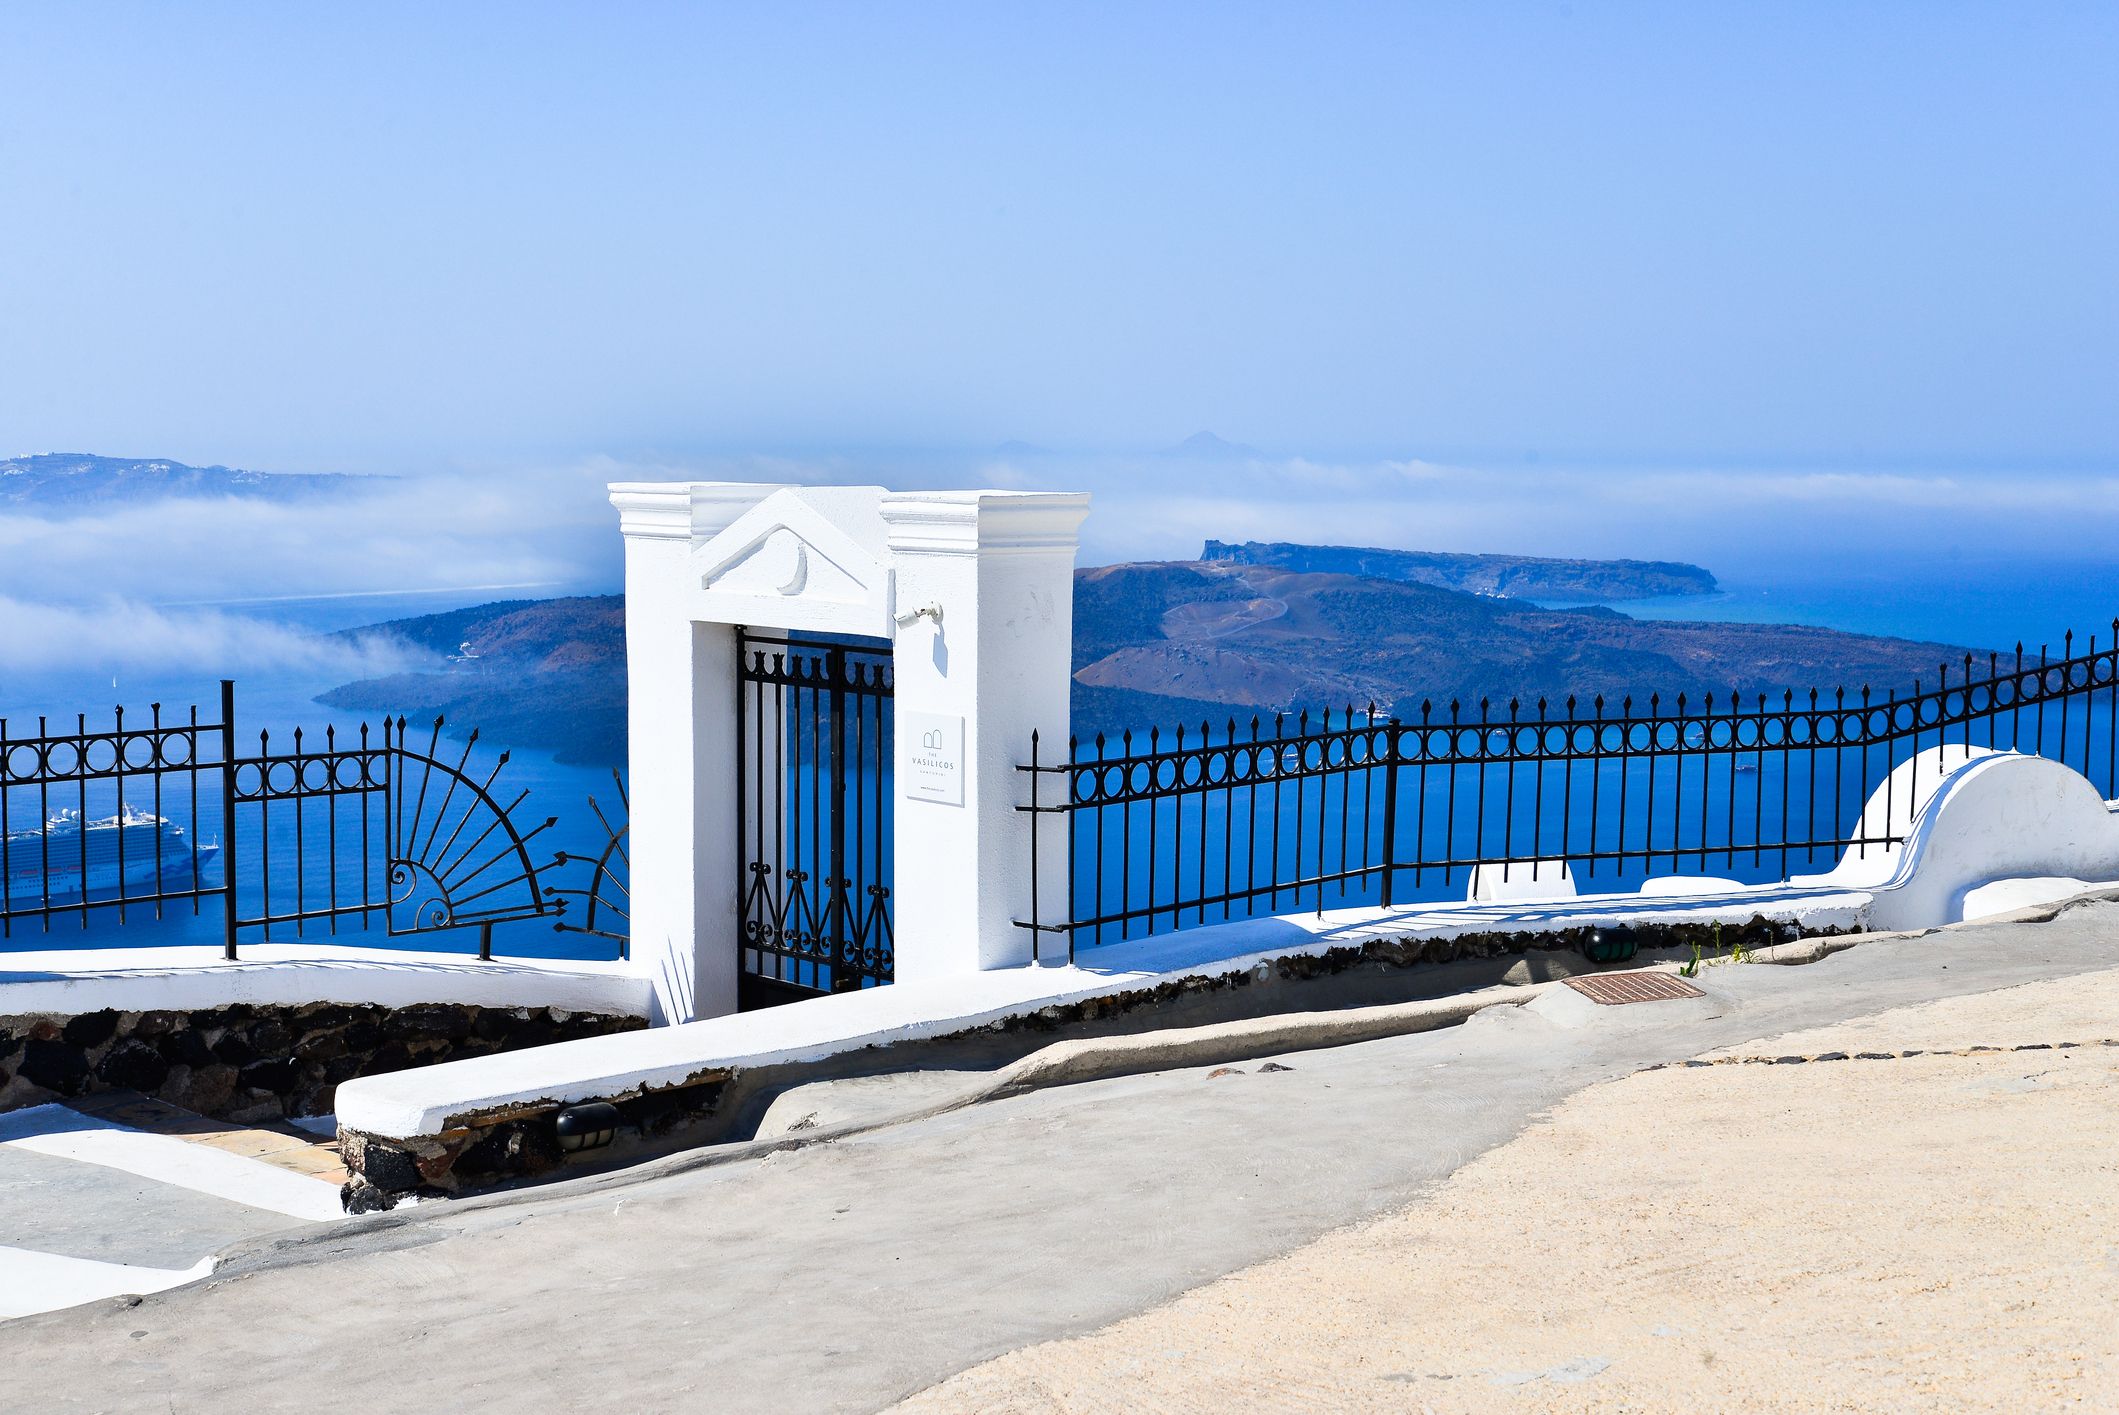 Beautiful Imerovigli in Santorini, Greece